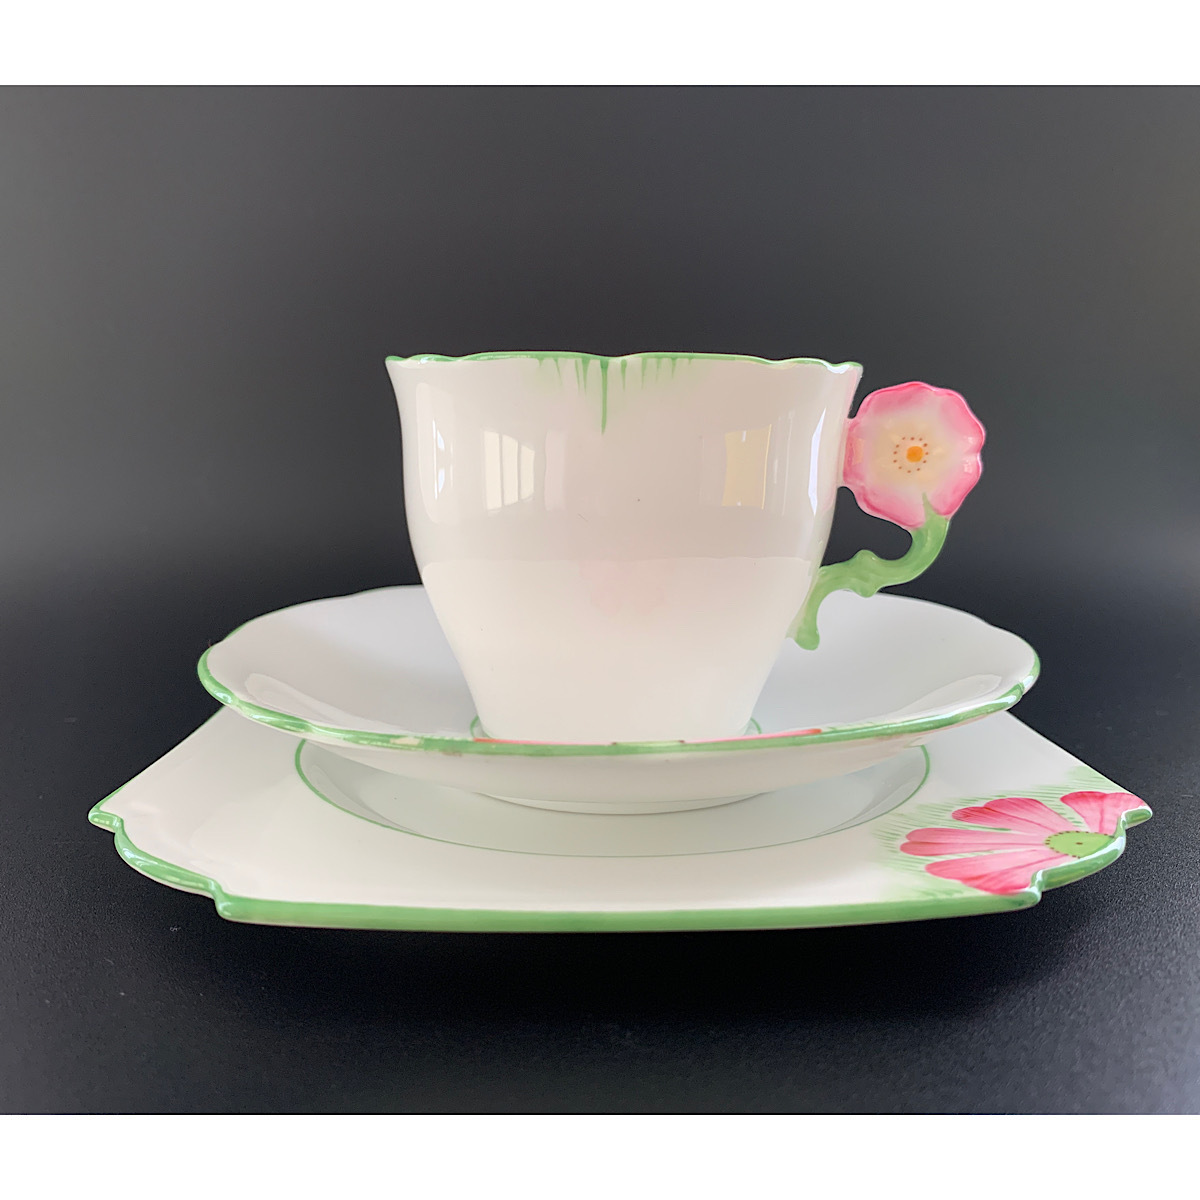 [ редкий! Британия прямой импорт!] прекрасный товар! Aynsley 1930 годы производства цветок руль рука краска Cosmos рисунок чайная чашка Trio A прекрасный товар!